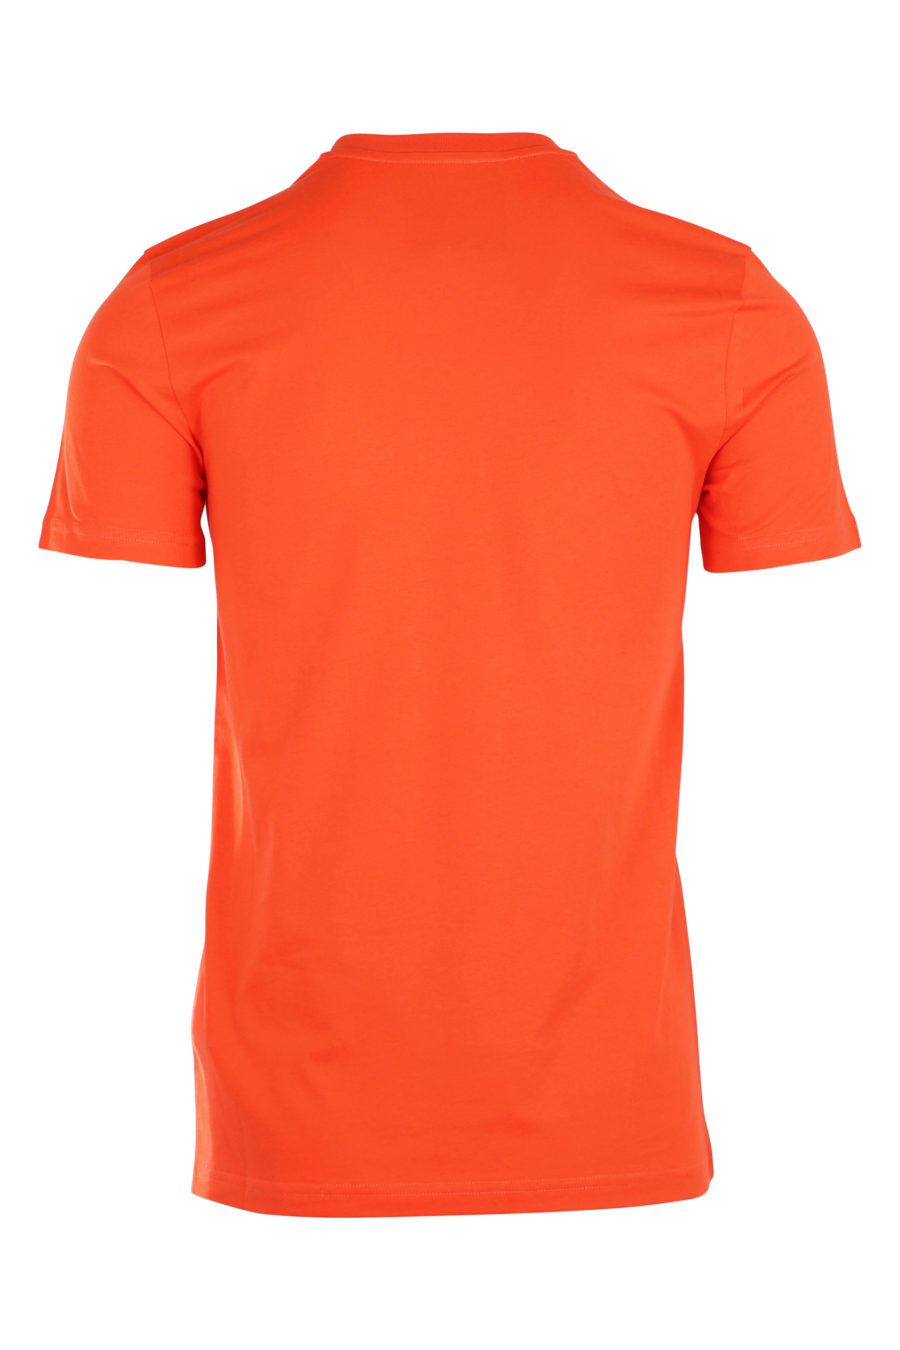 Camiseta anaranjada con logo milano "fantasy" - IMG 9938